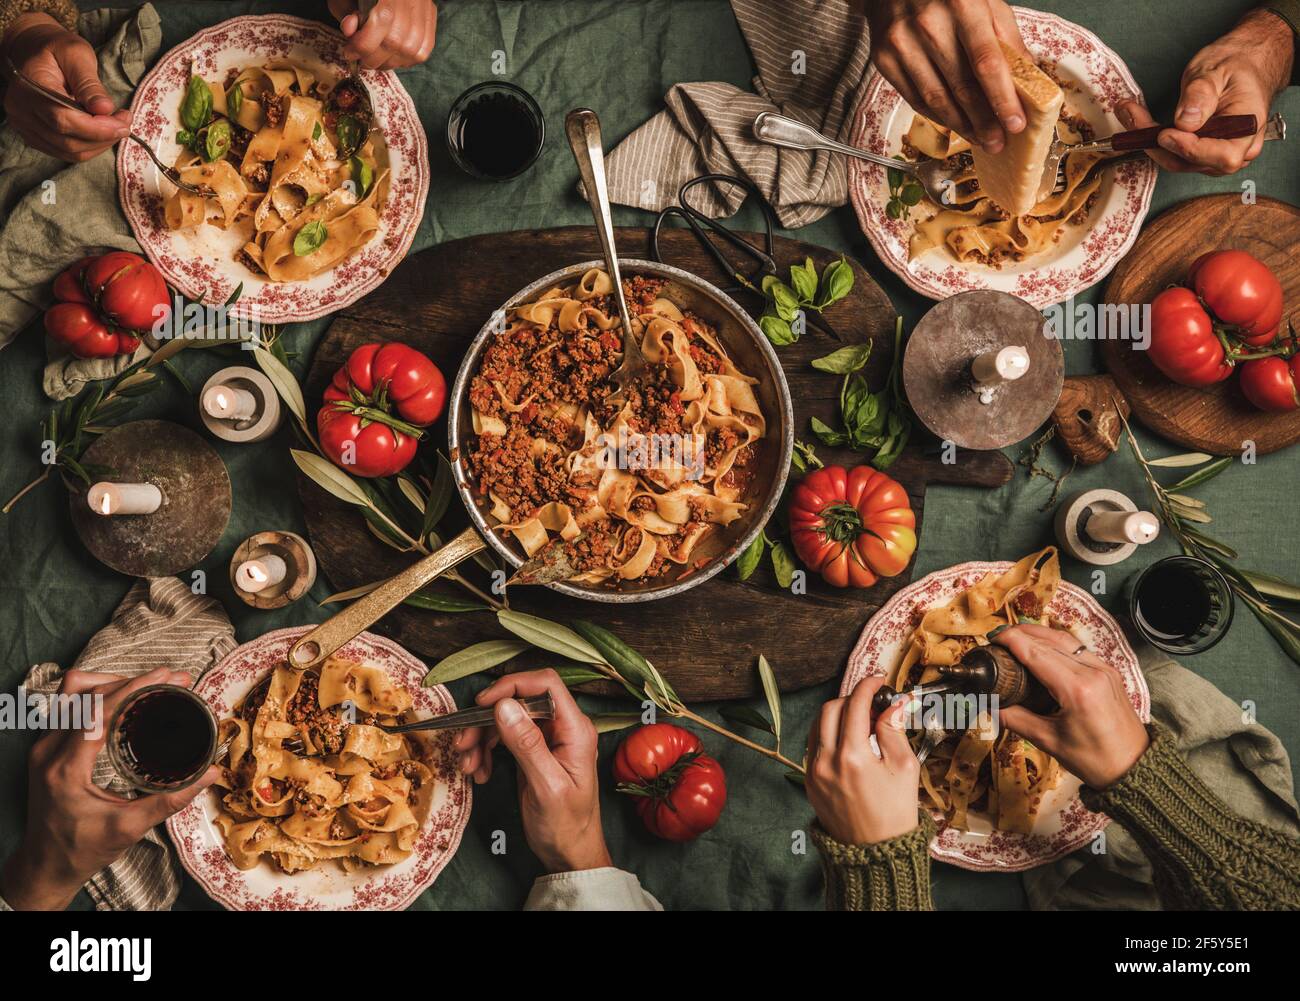 La gente mangia tagliatelle bolognese a cena di famiglia gathering Foto Stock